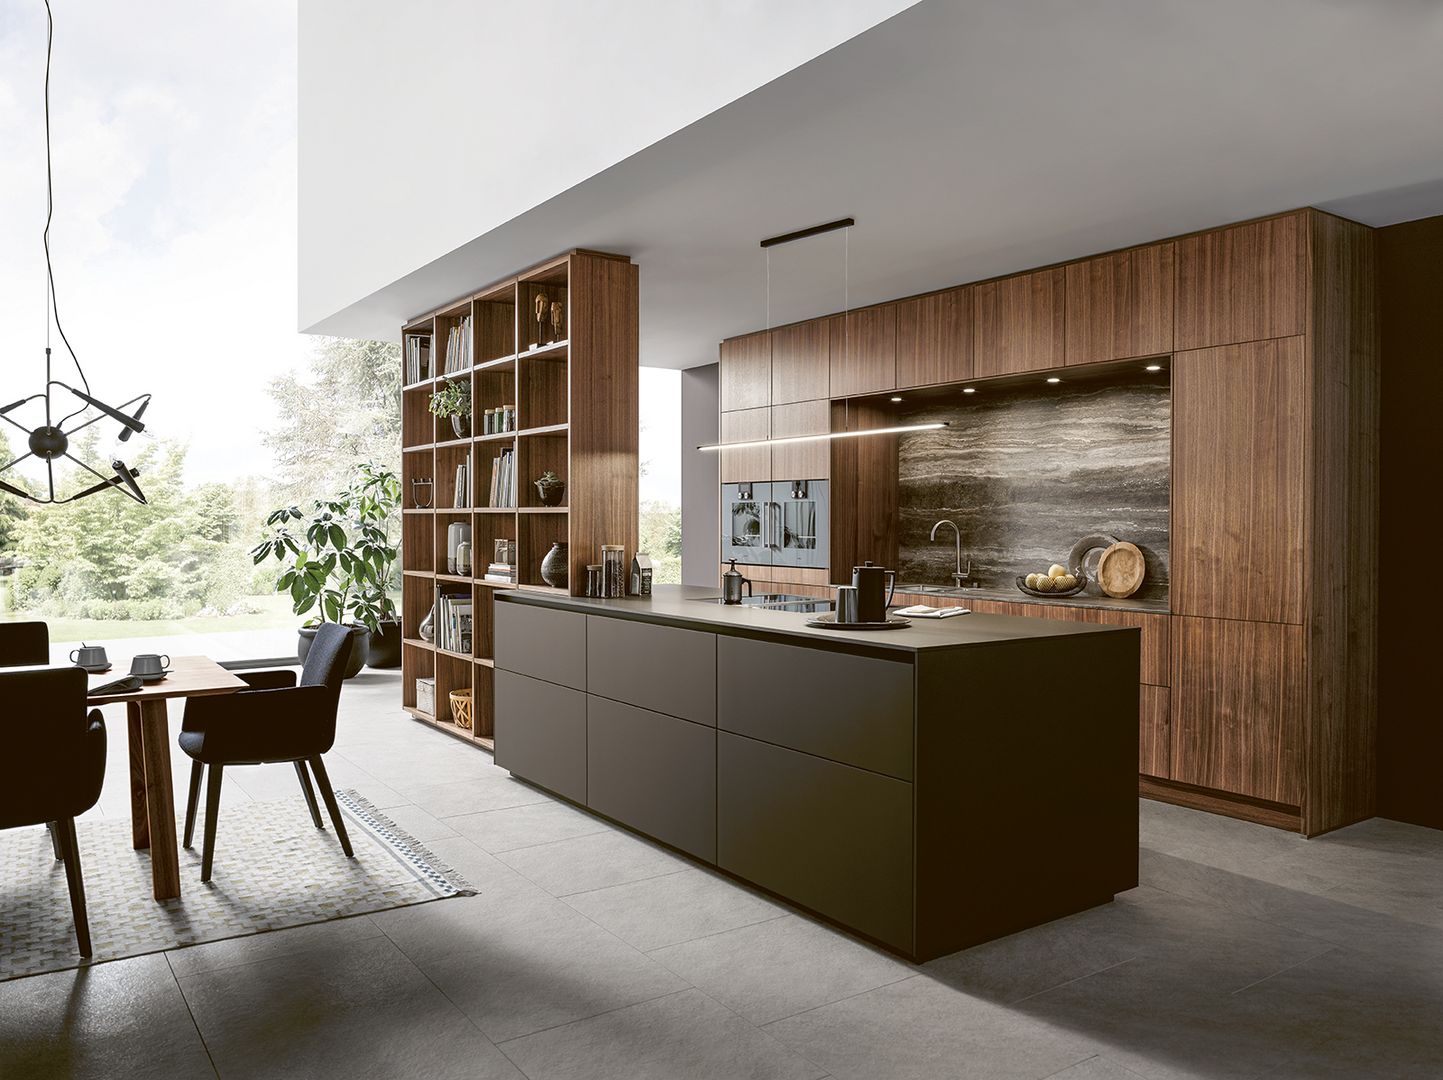 Foto : De next125 NX870 moderne keuken in mokkabruin